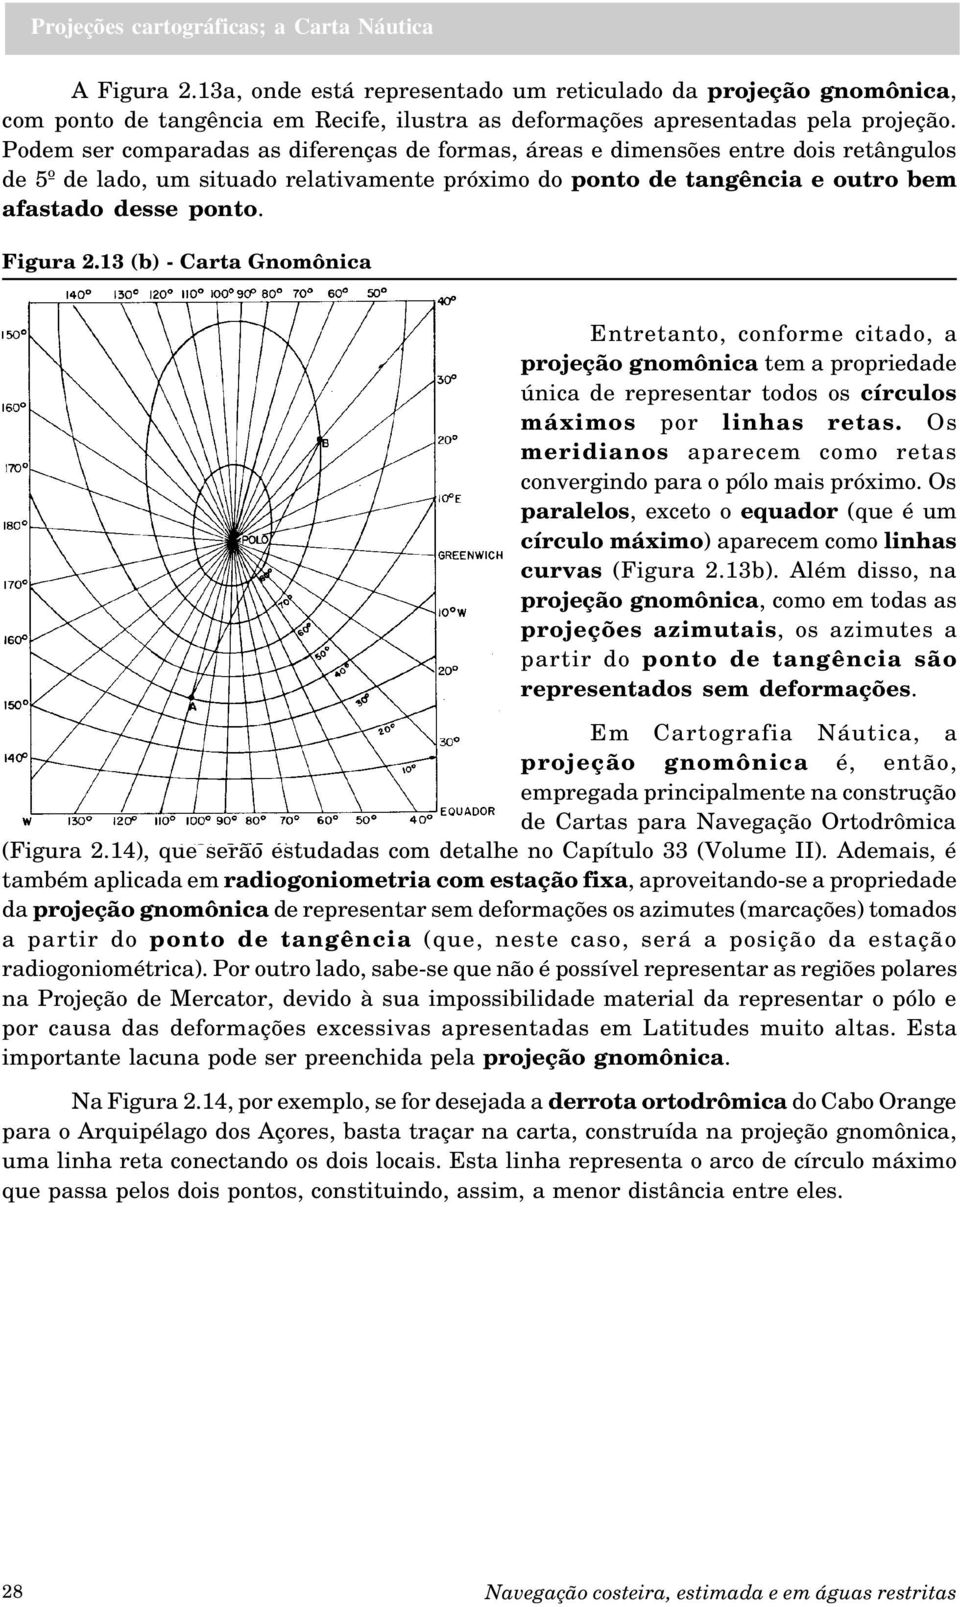 13 (b) - Carta Gnomônica Entretanto, conforme citado, a projeção gnomônica tem a propriedade única de representar todos os círculos máximos por linhas retas.